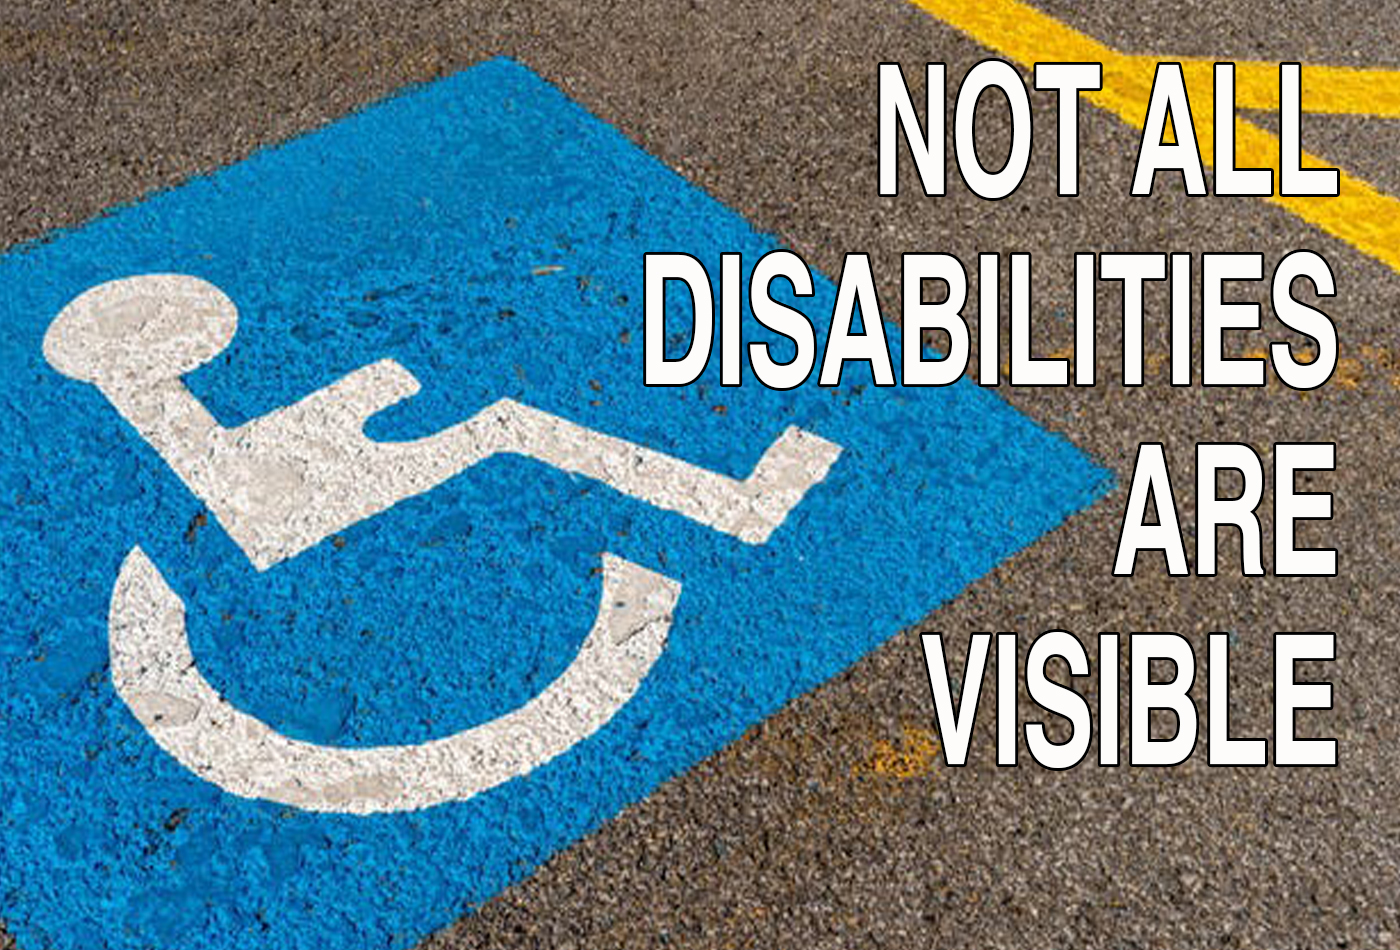 ليست كل حالات الإعاقة ظاهرة